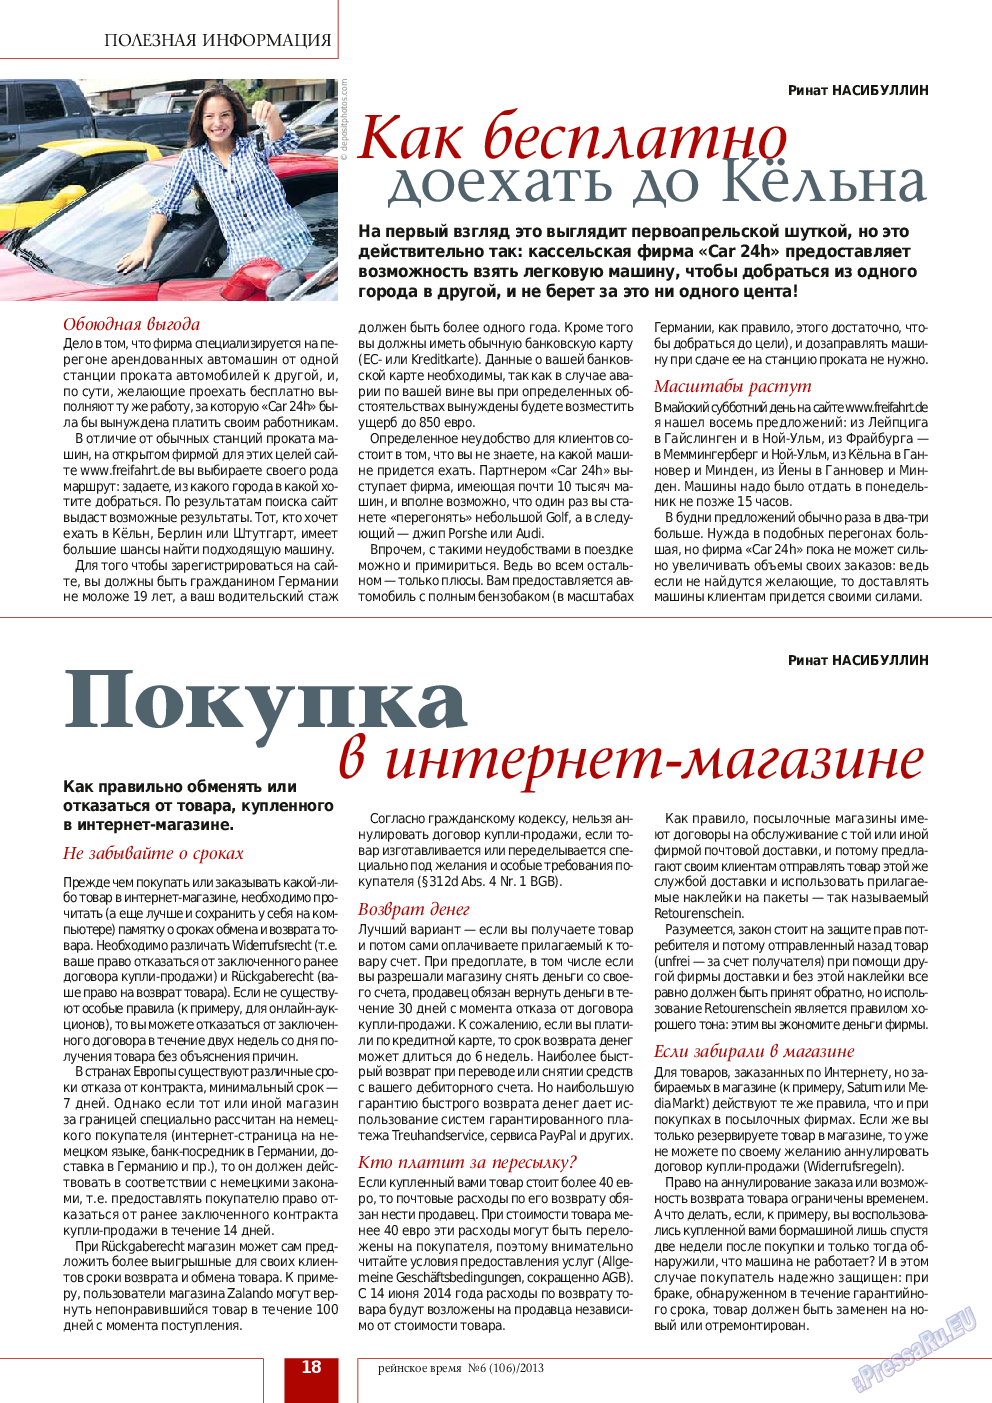 Рейнское время, журнал. 2013 №6 стр.18